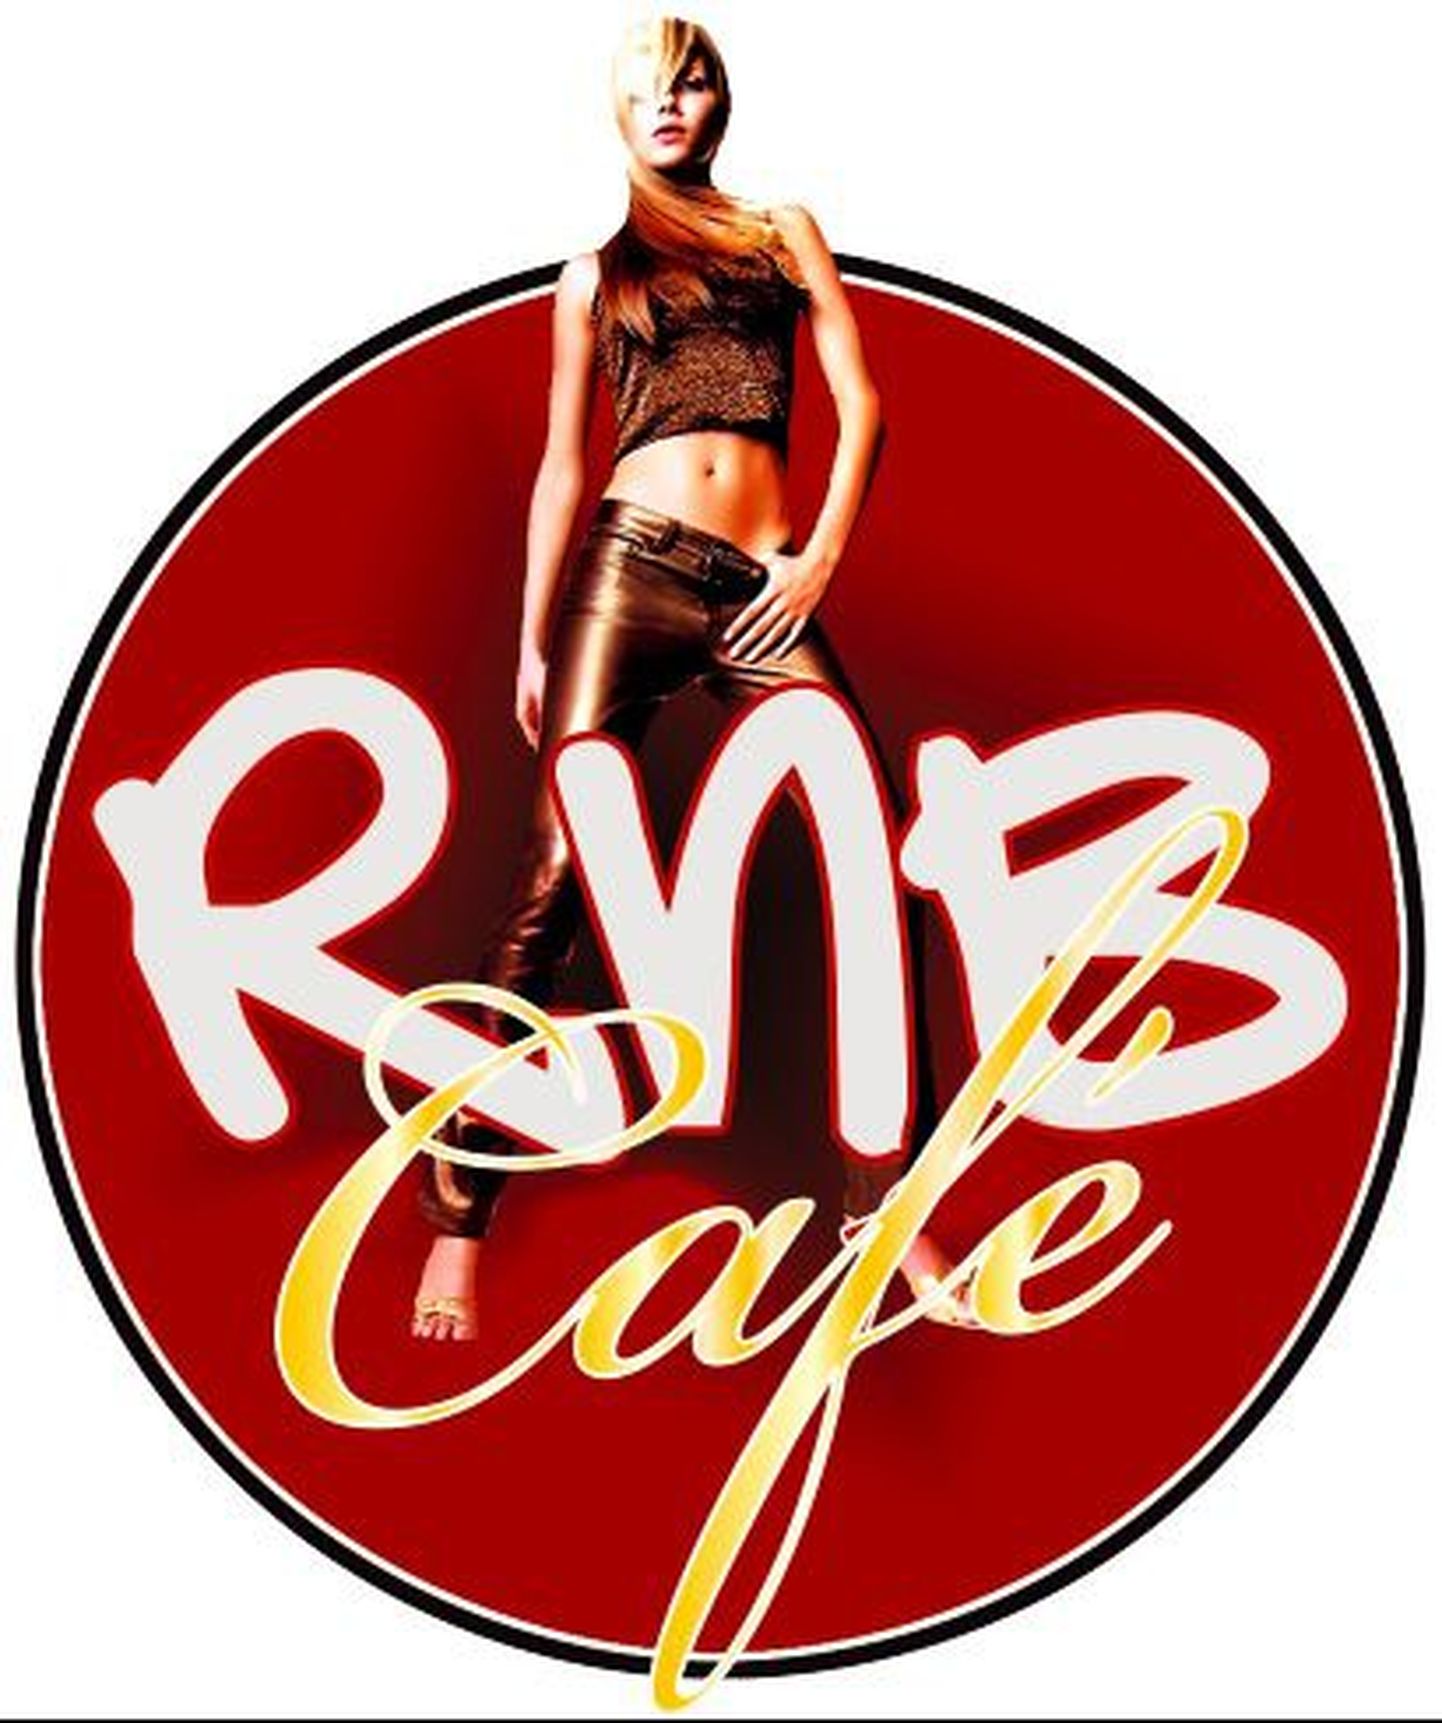 RnB Cafe